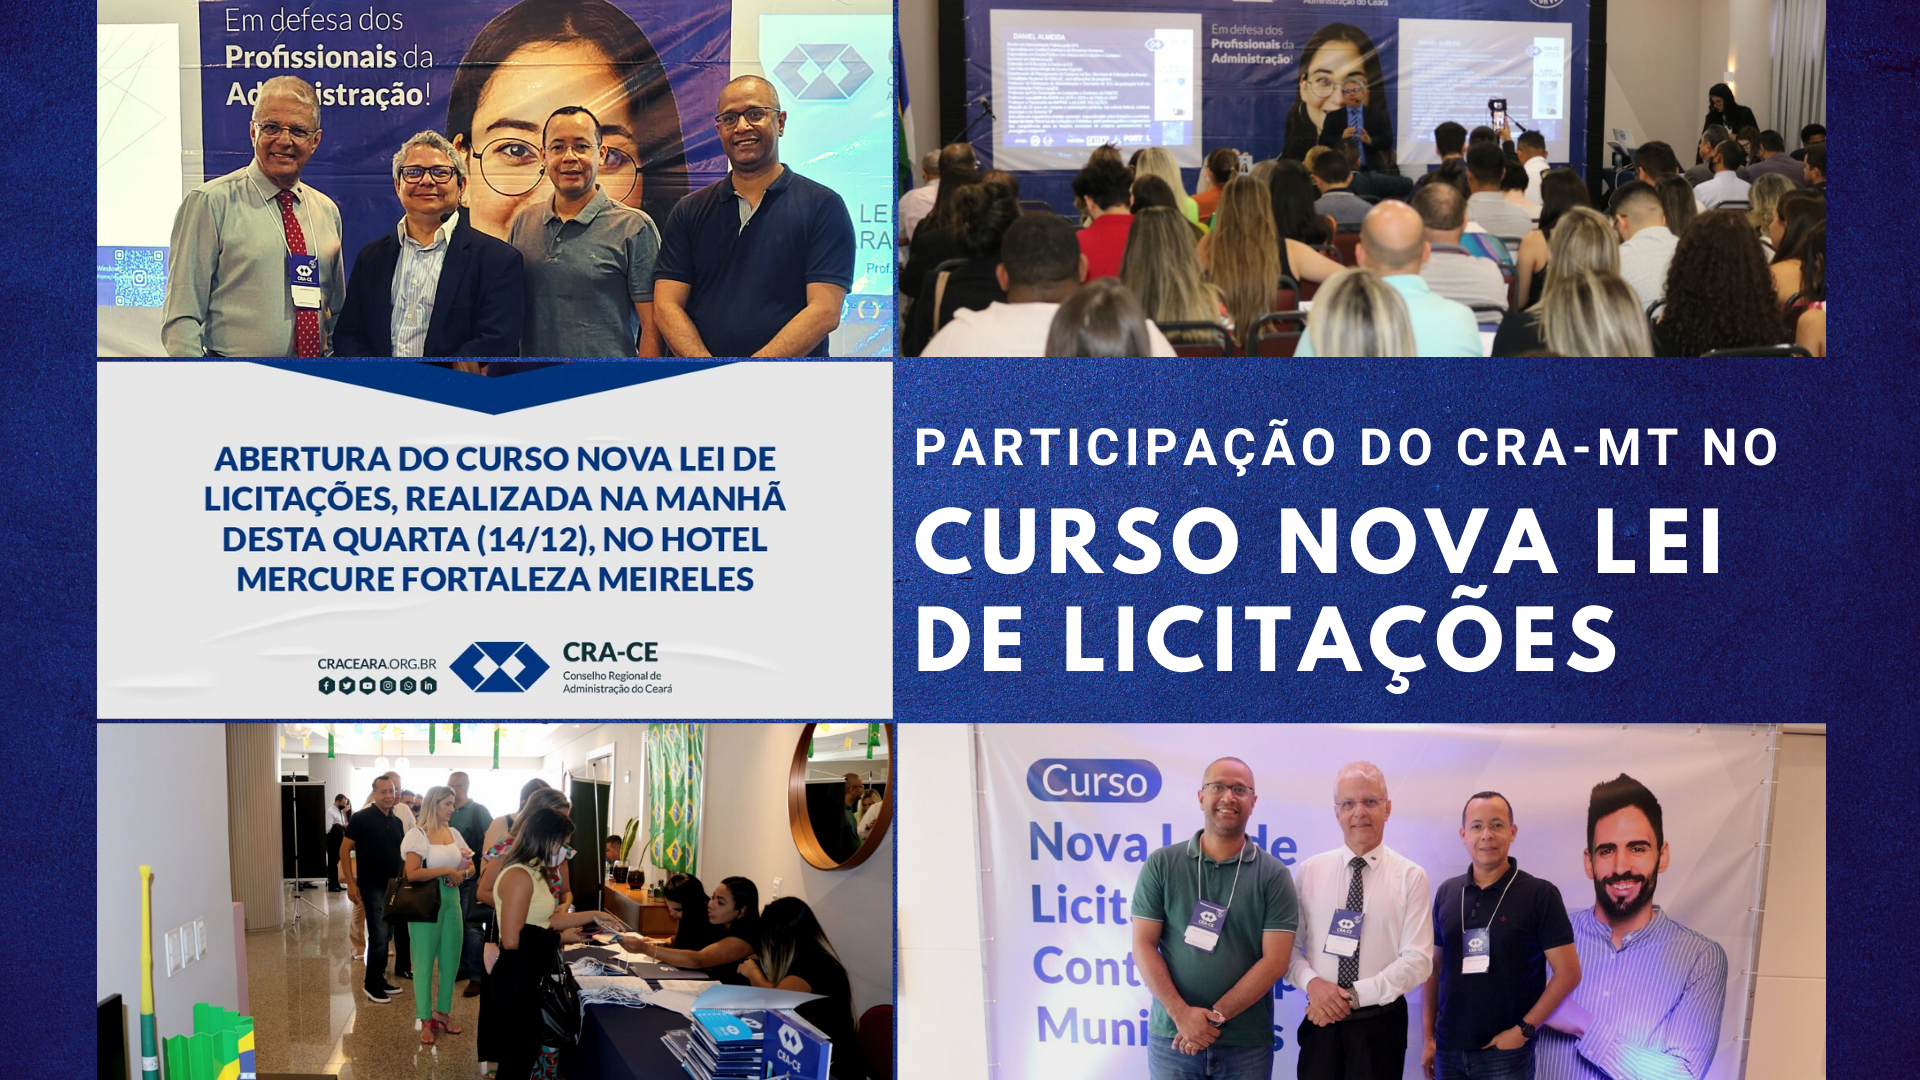 You are currently viewing Participação do CRA-MT no Curso Nova Lei de Licitações